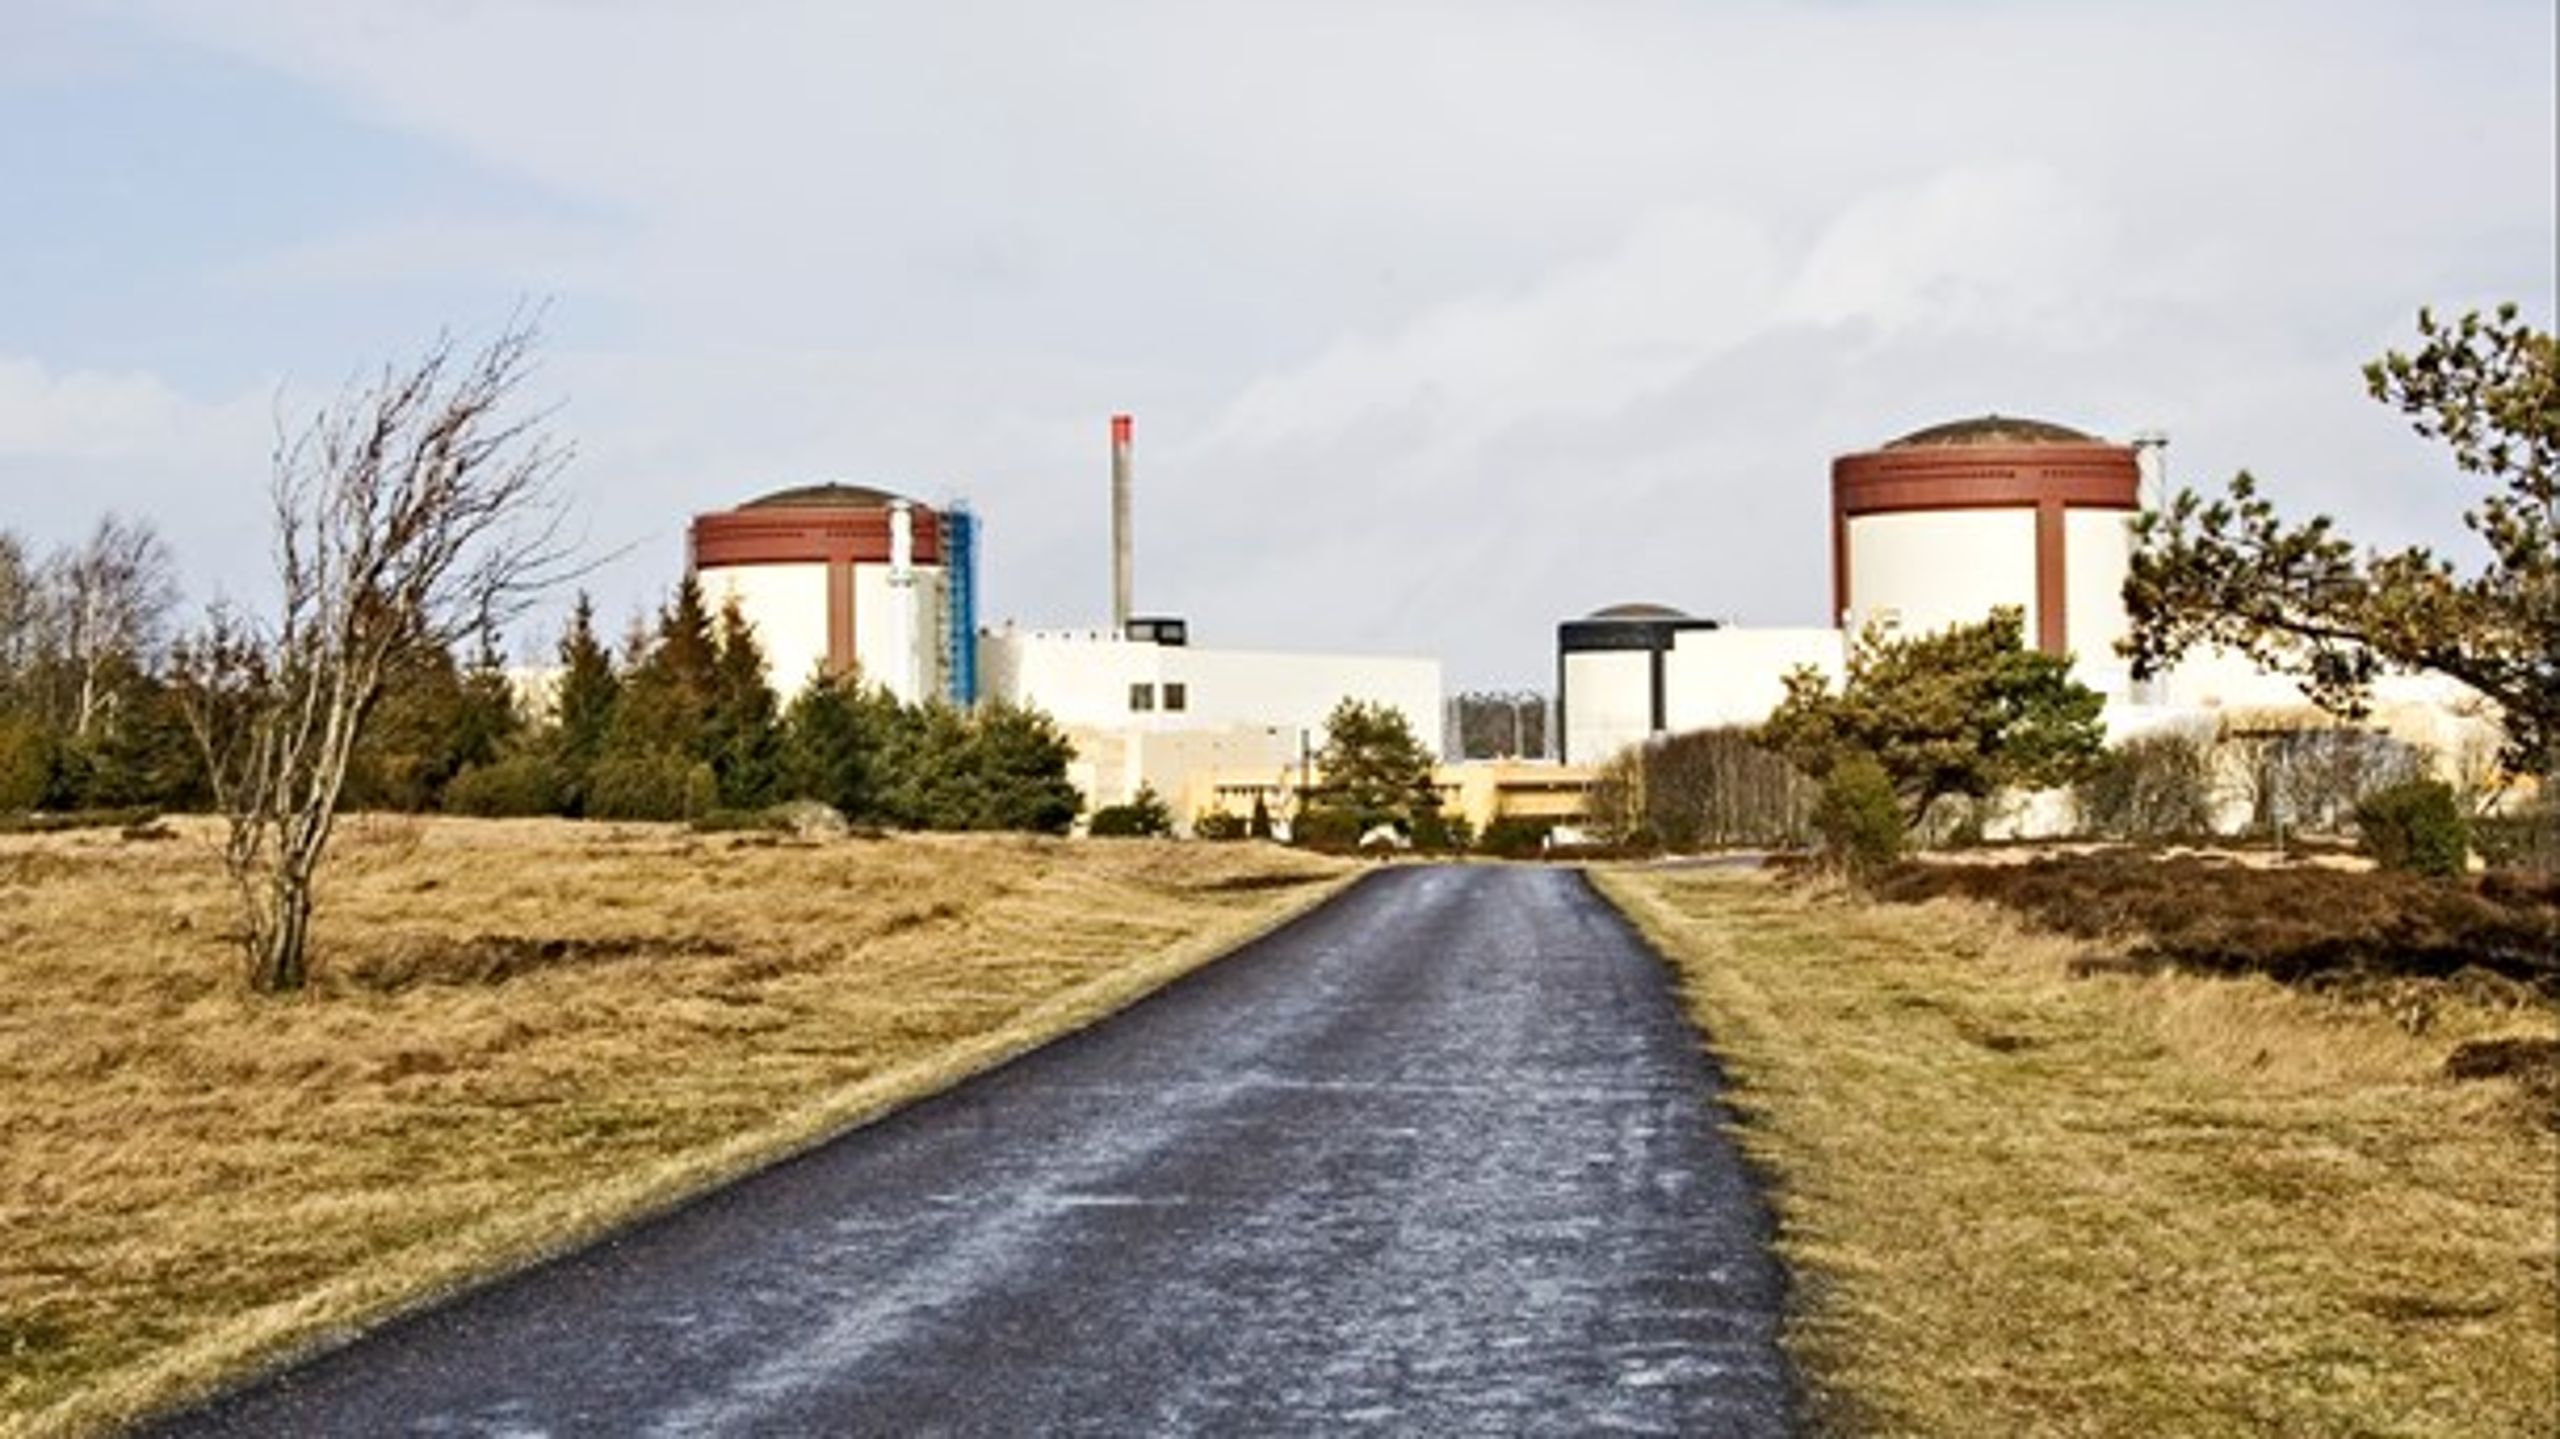 Danmark kan sikre atomkraft uden det farlige affald ved for eksempel at købe de to lukningstruede Ringhals-reaktorer i Sverige, skriver Thomas Grønlund Nielsen.